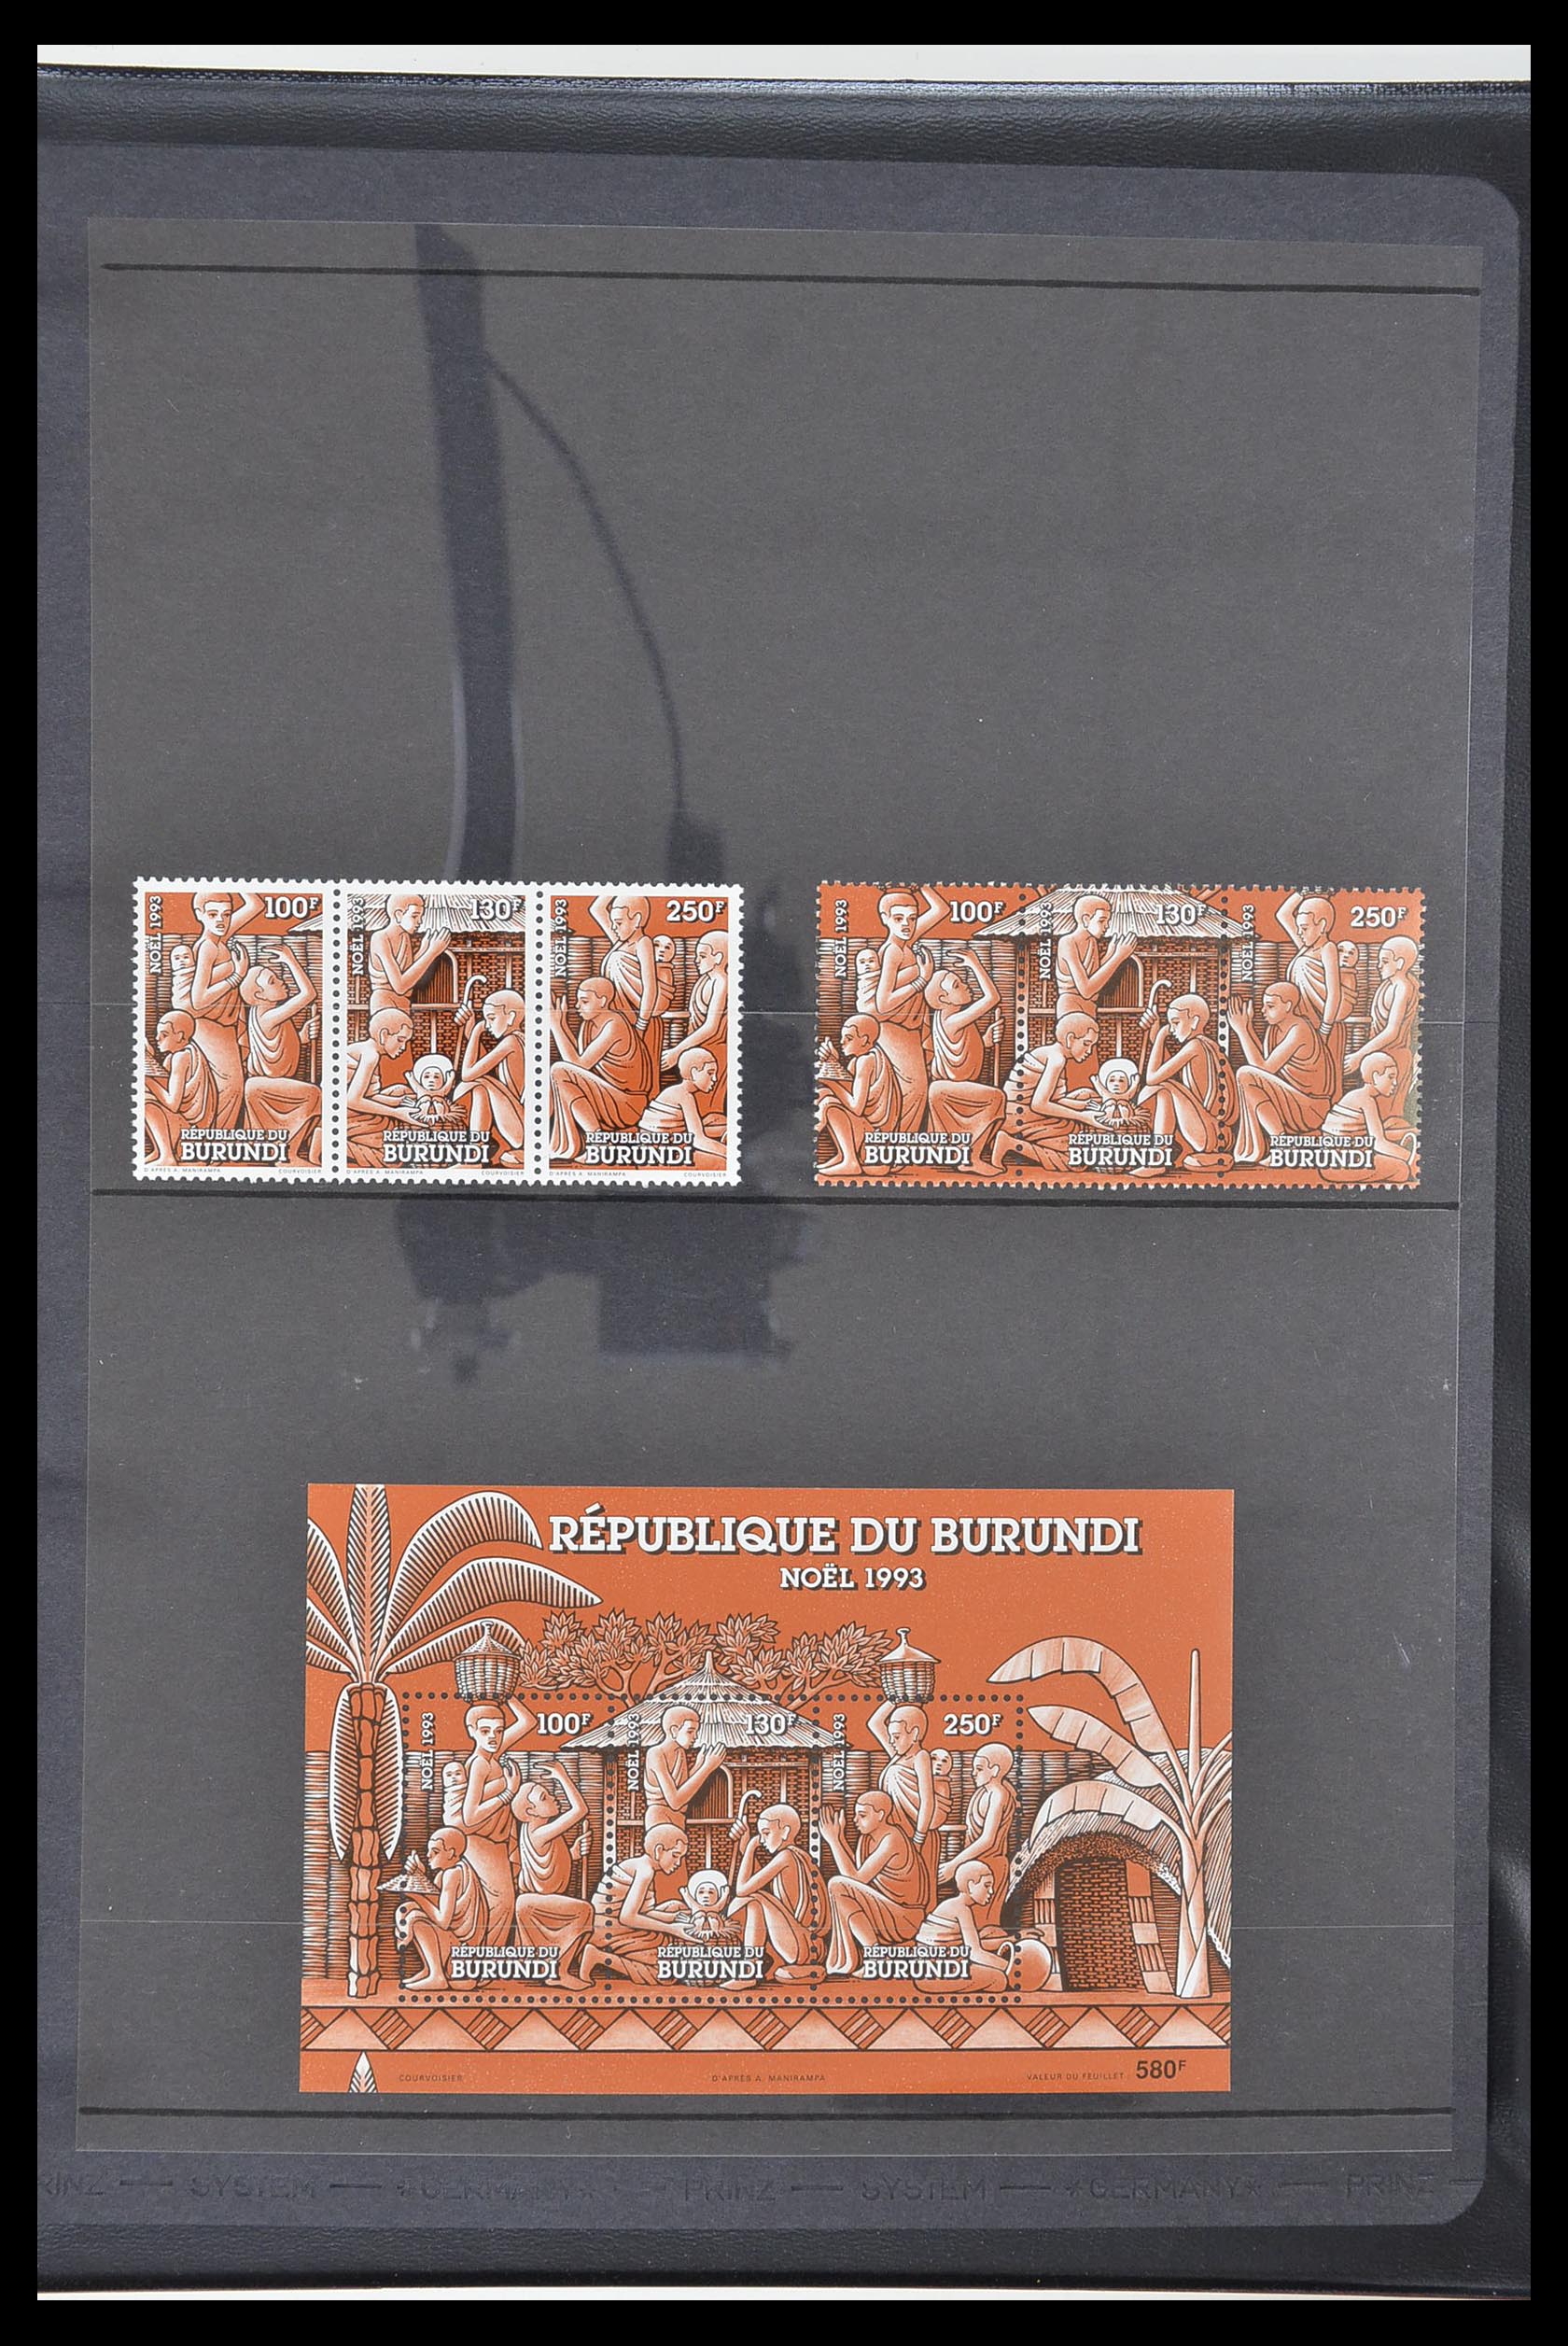 33764 356 - Stamp collection 33764 Burundi 1962-2004.